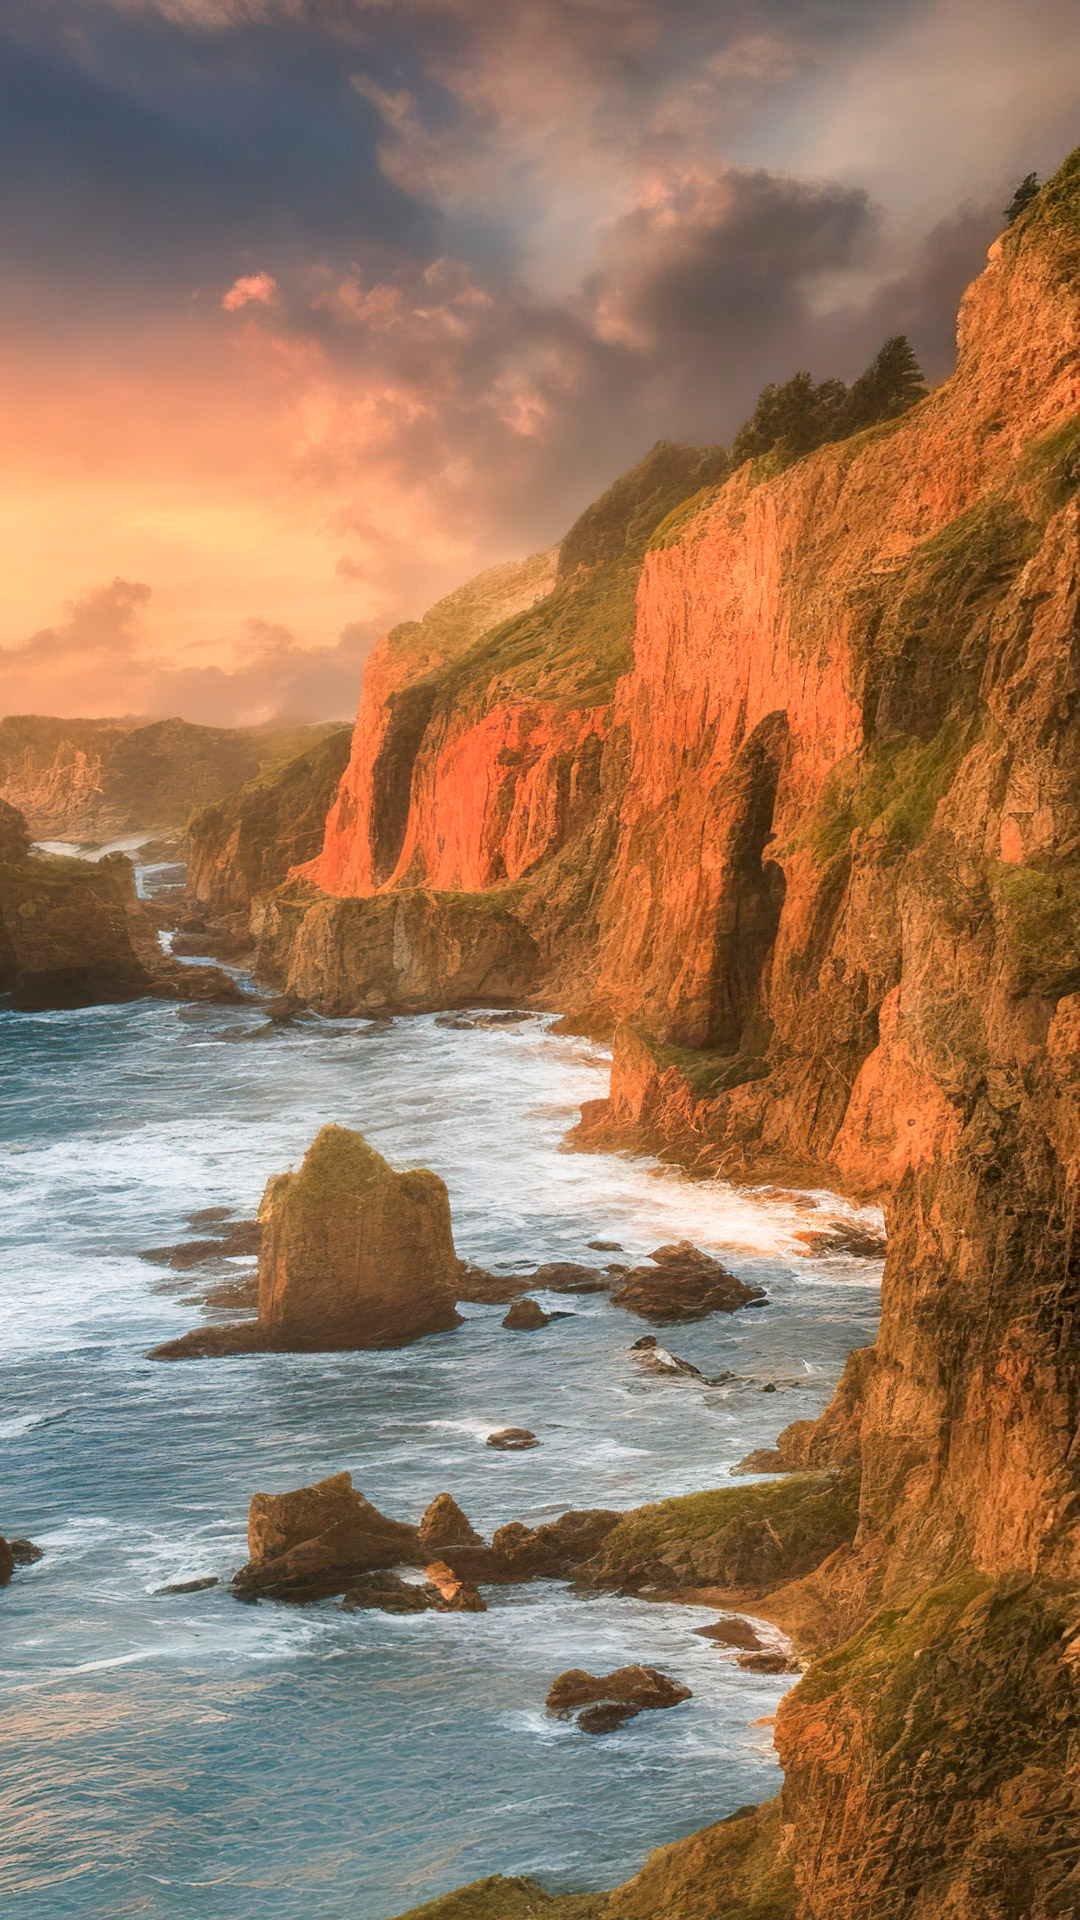 Téléchargez notre fond d'écran de paysage pour Android en HD, présentant une vue côtière époustouflante avec des falaises rugueuses, des vagues déferlantes et un coucher de soleil enflammé.